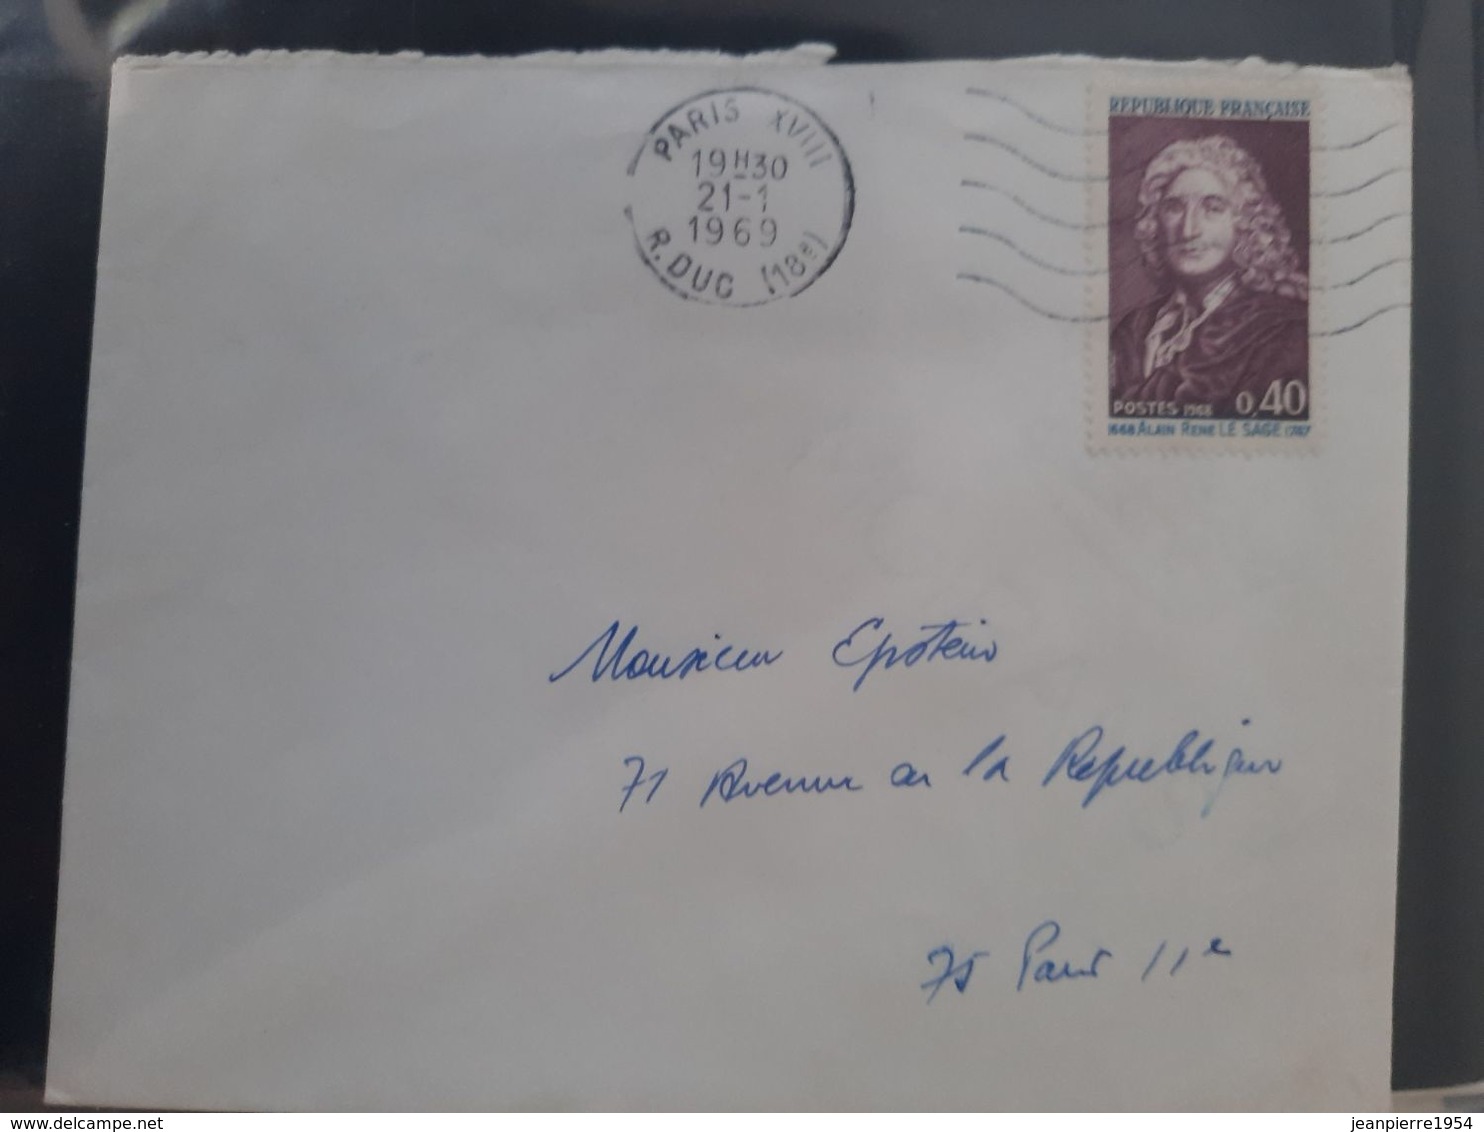 notice premier jour des timbres poste